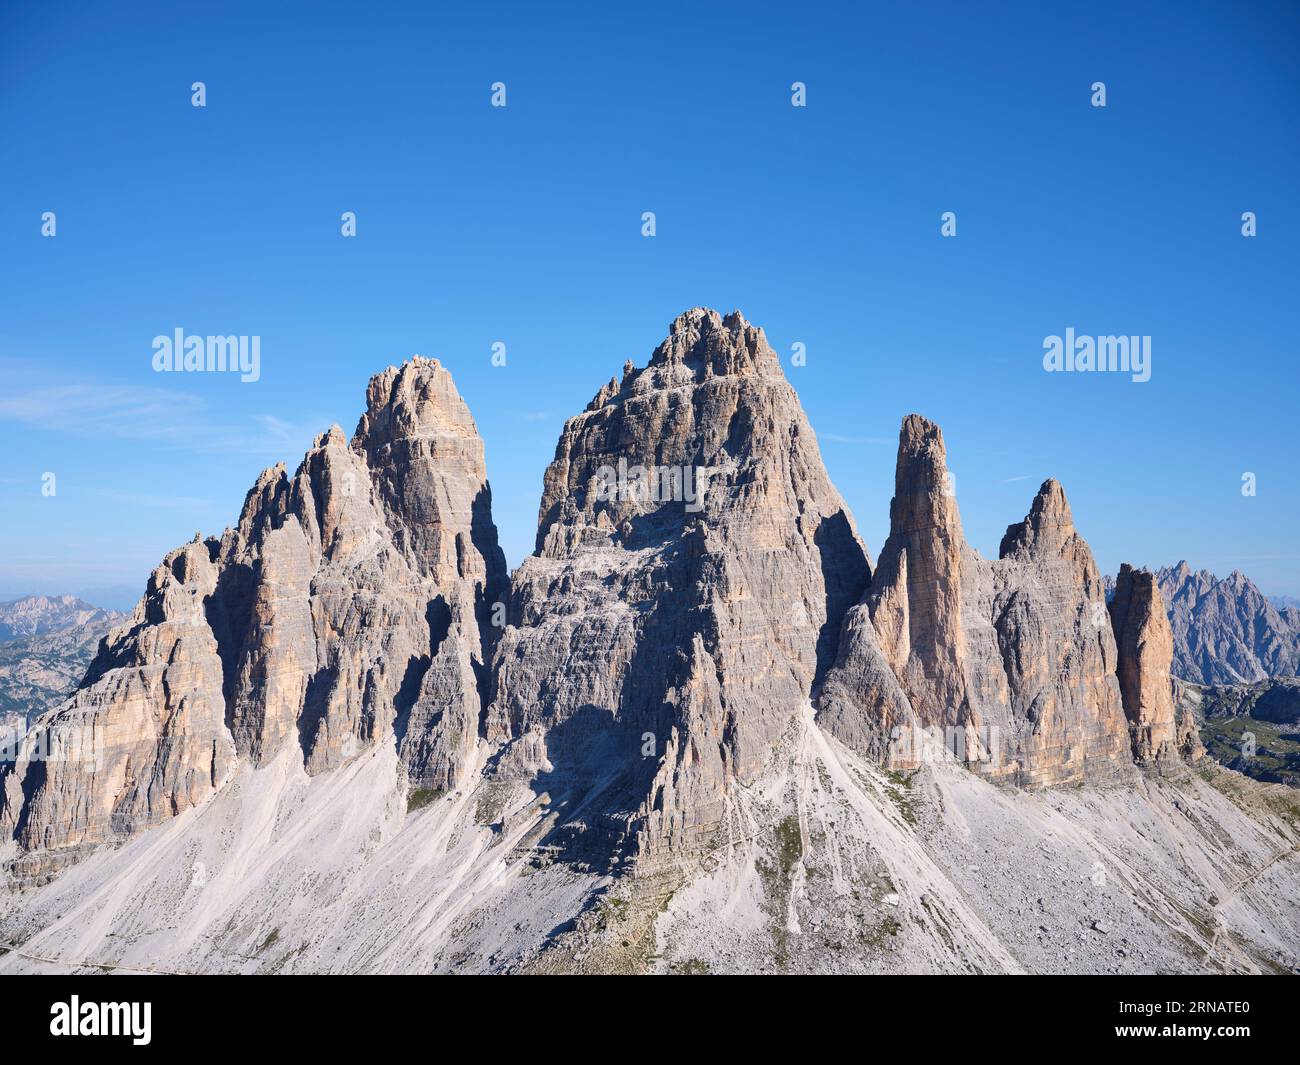 VUE AÉRIENNE. Le côté sud de l'emblématique Tre cime di Lavaredo (altitude : 2999 mètres). Auronzo di Cadore, province de Belluno, Vénétie, Italie. Banque D'Images